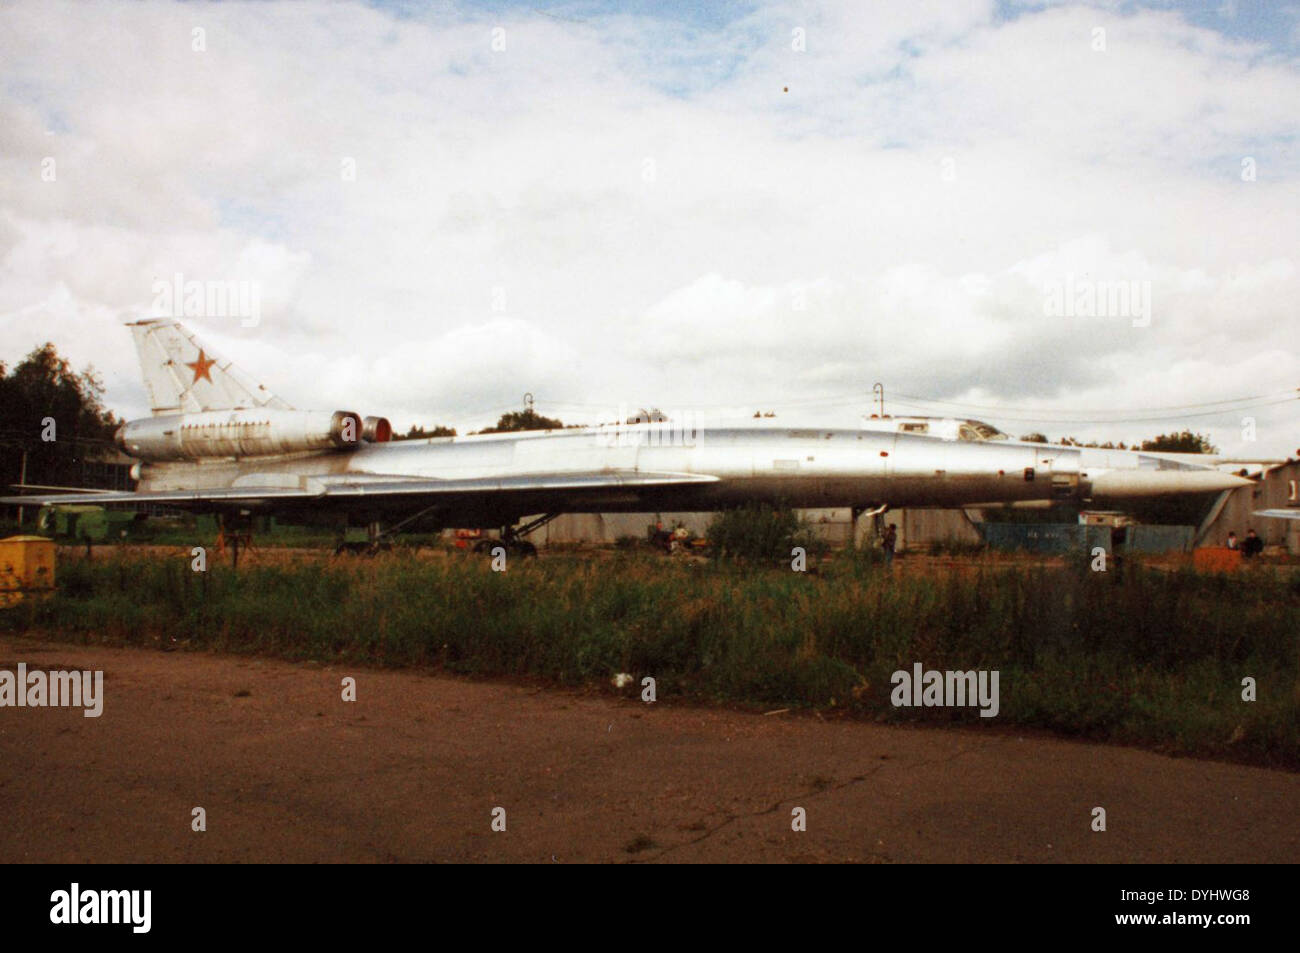 Tupolev Tu-22 Blinder Stock Photo